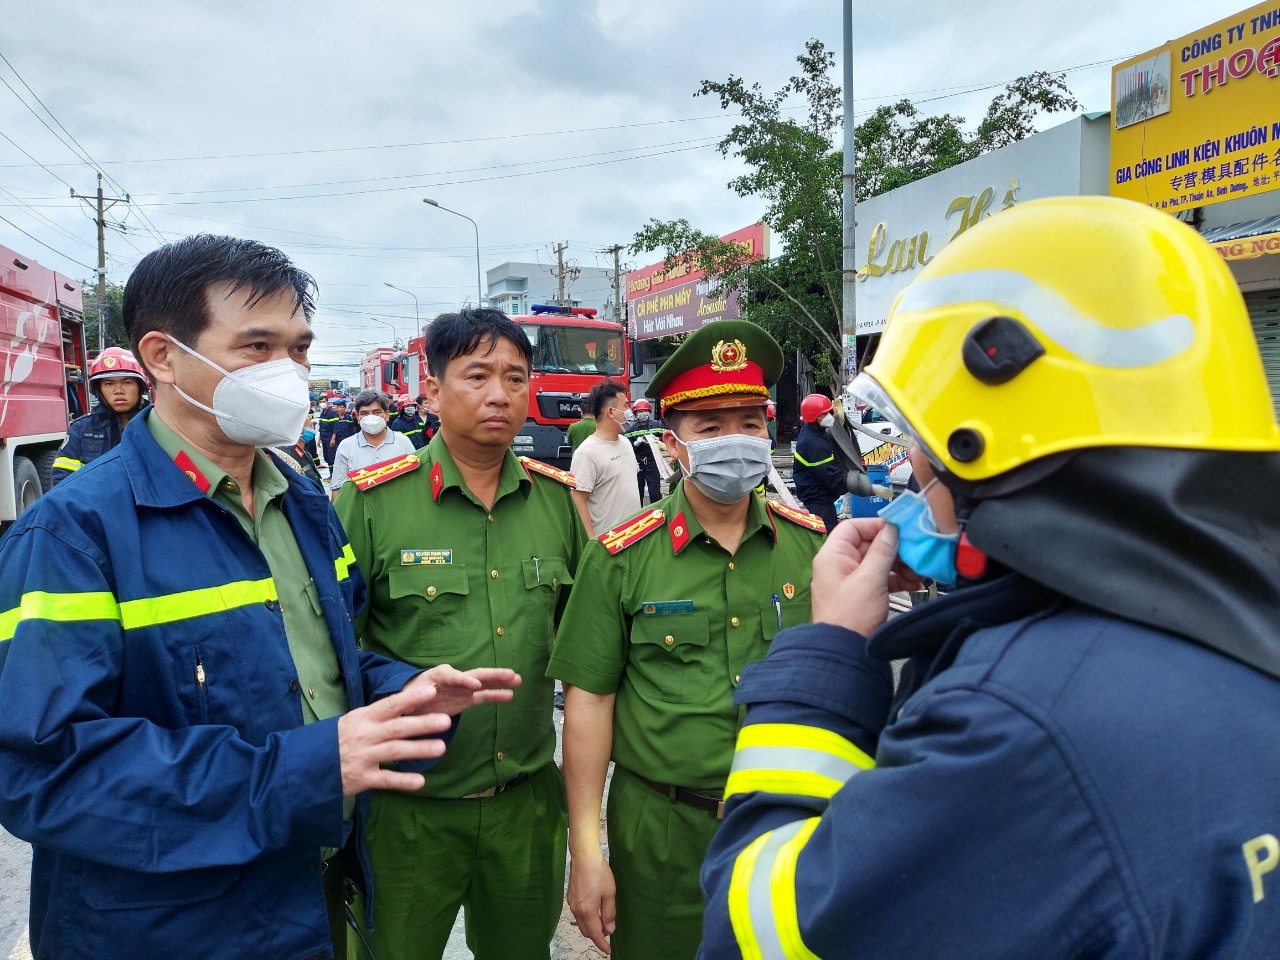 Đại tá Trịnh Ngọc Quyên chỉ đạo điều cứu hộ tìm kiếm nạn nhân tại hiện trường. Ảnh: CABD